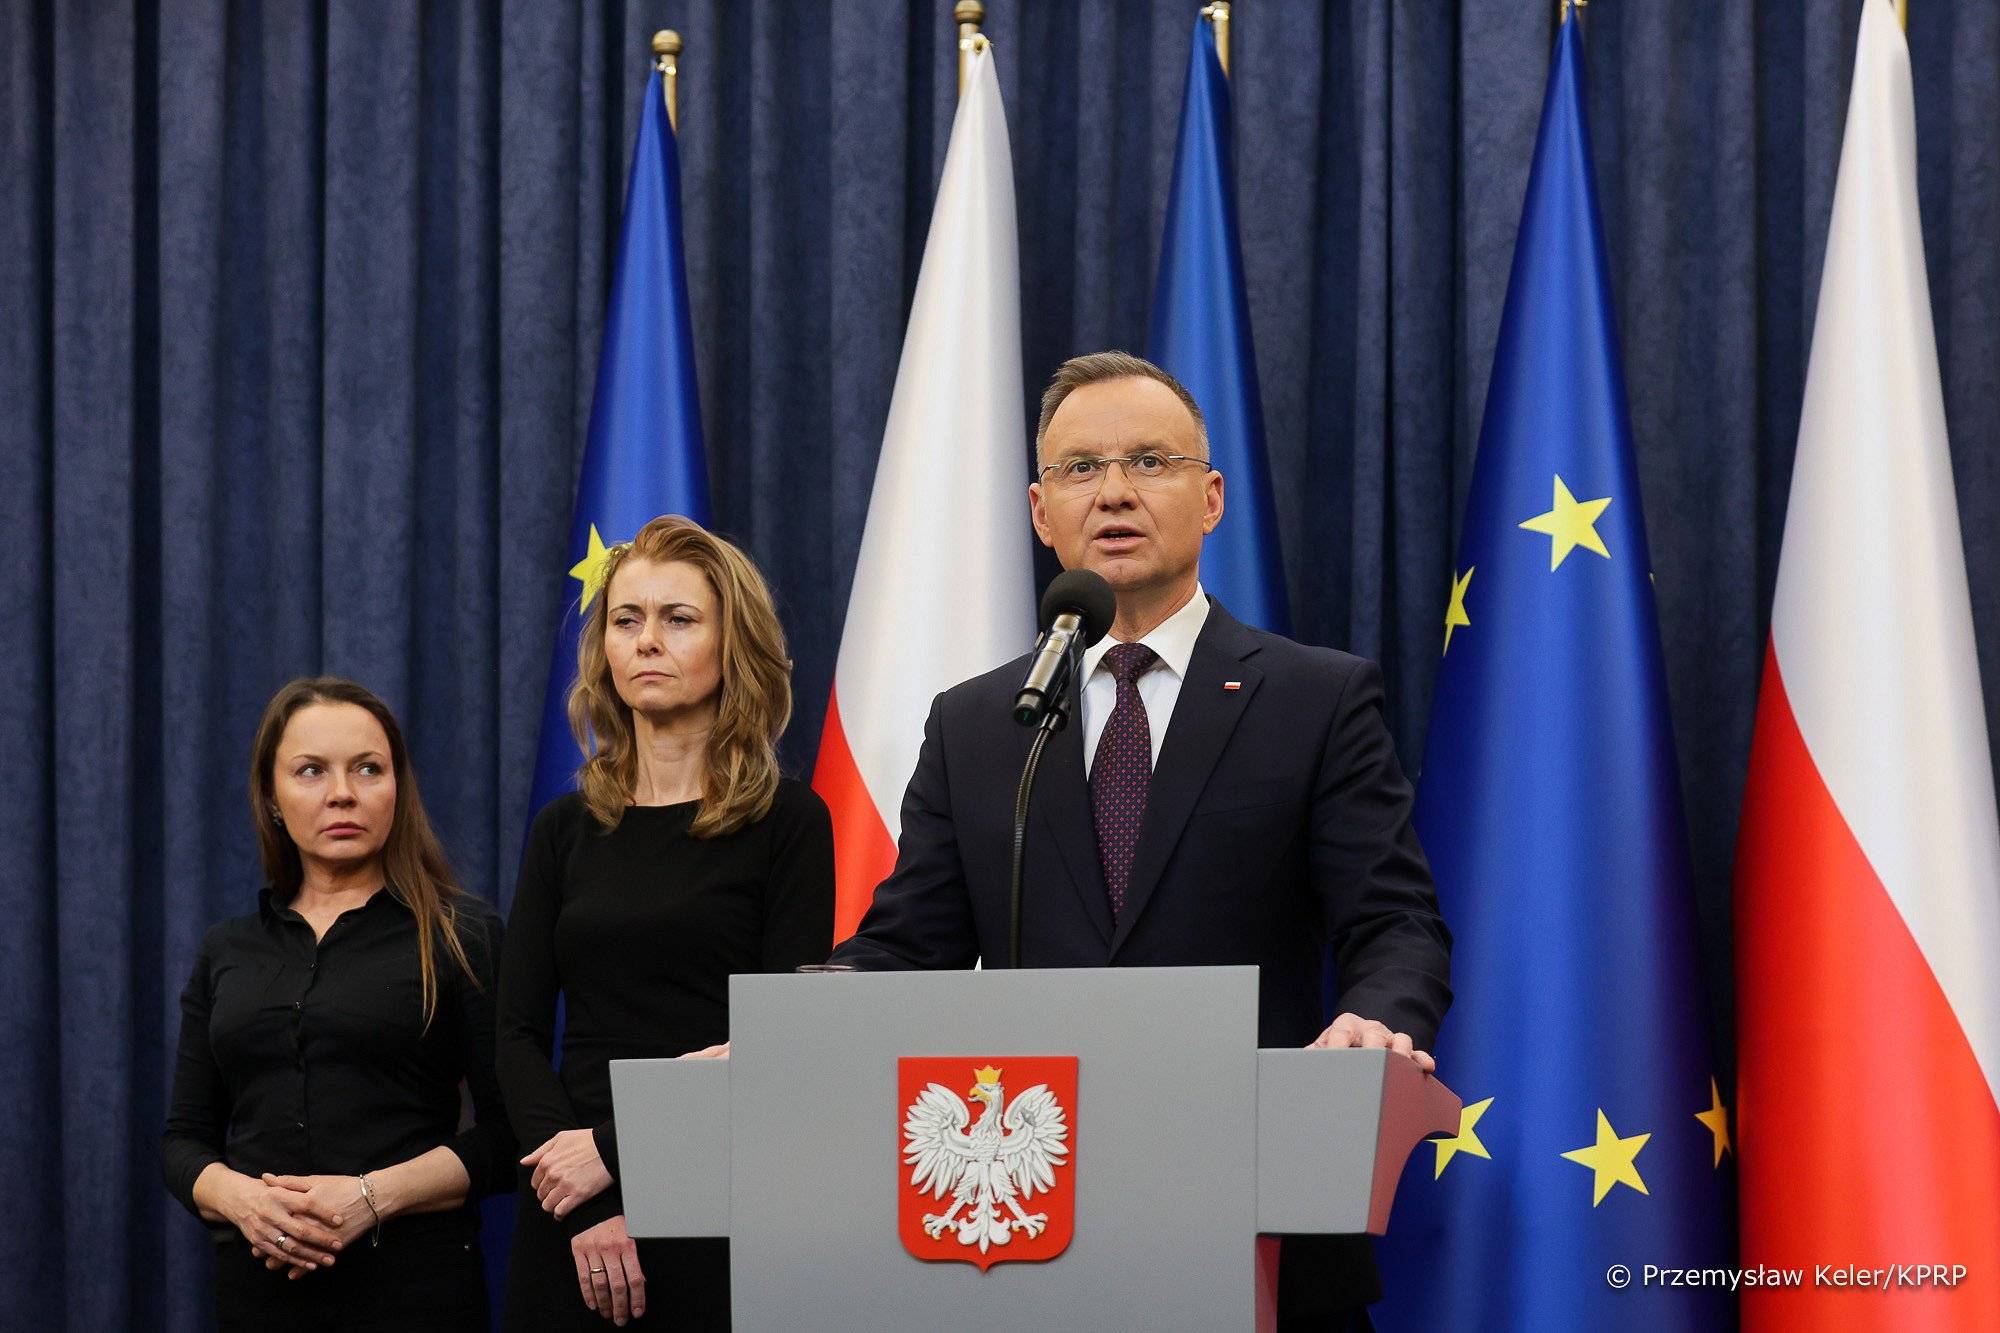 Na zdjęciu widzimy Andrzeja Dudę, za nimi stoją żony Mariusza Kamińskiego i Macieja Wąsika. W tle widzimy flagi Polski i uNII eUROPEJSKIEJ